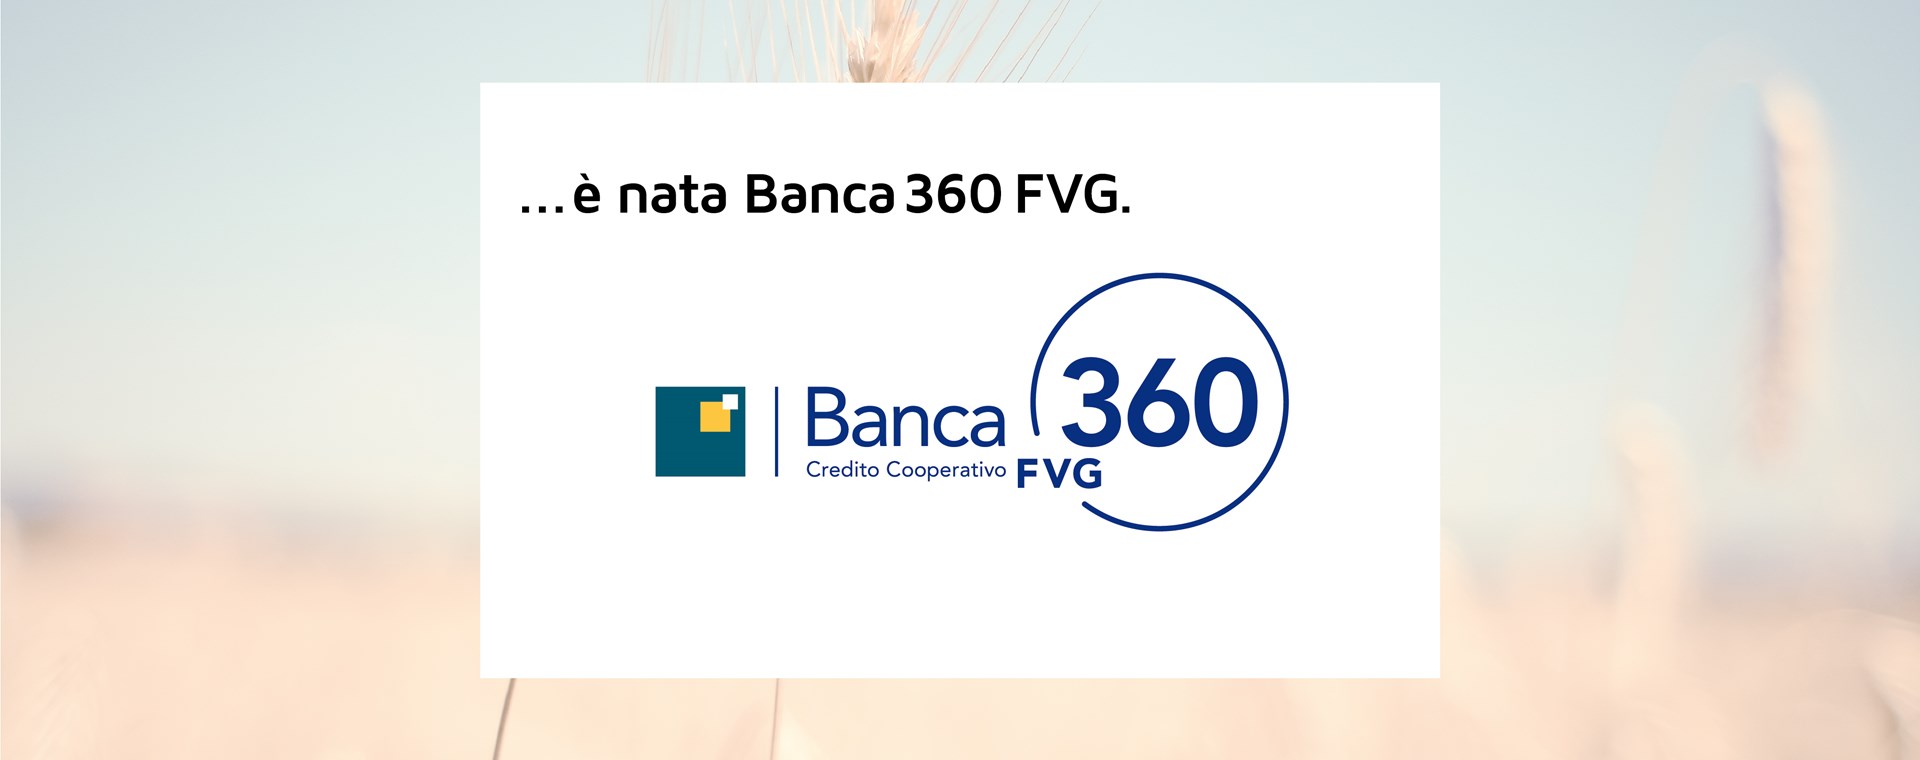 è nata Banca 360 FVG 